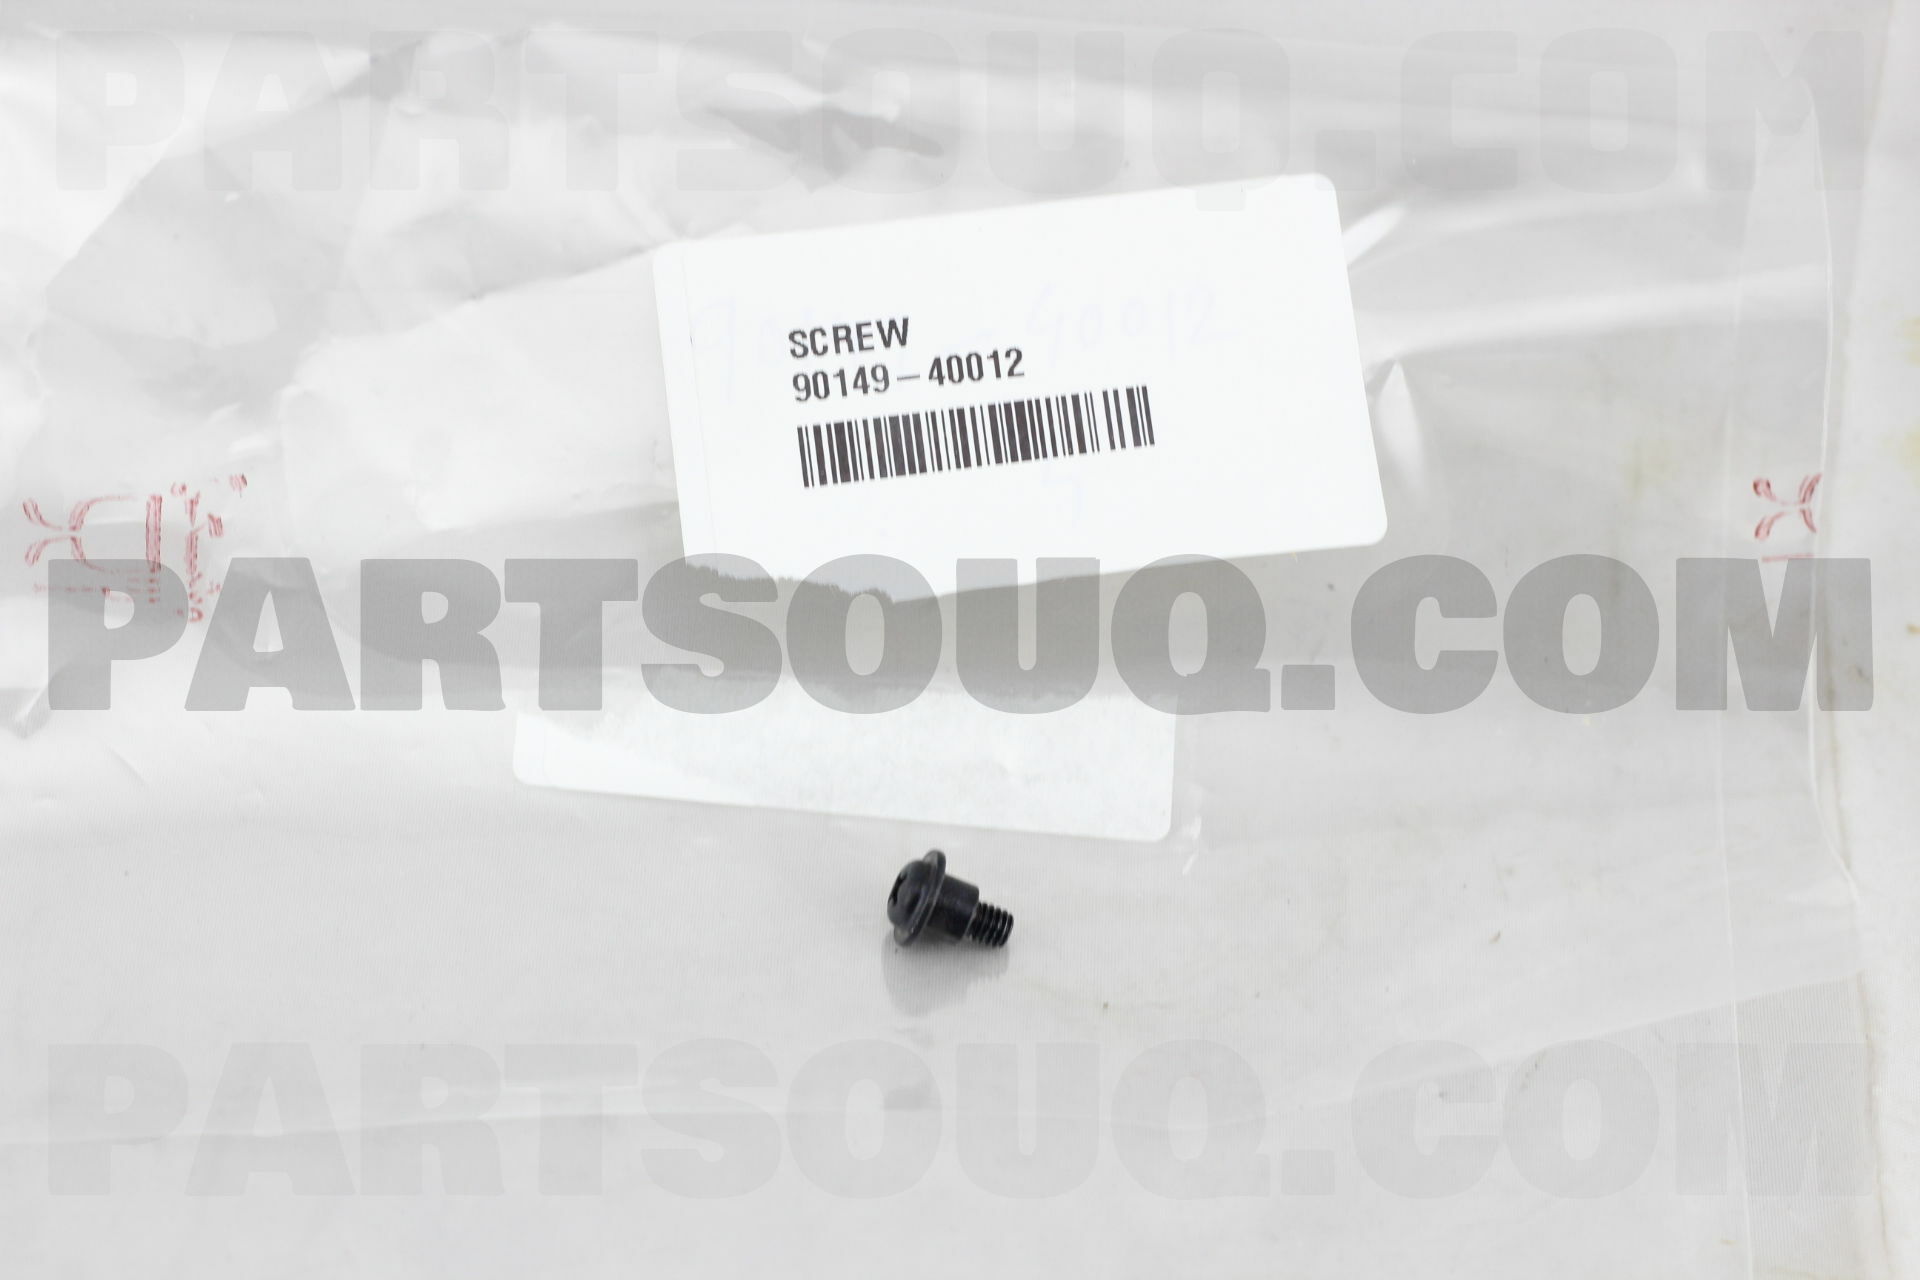 SCREW 9014940012 | Toyota Parts | PartSouq